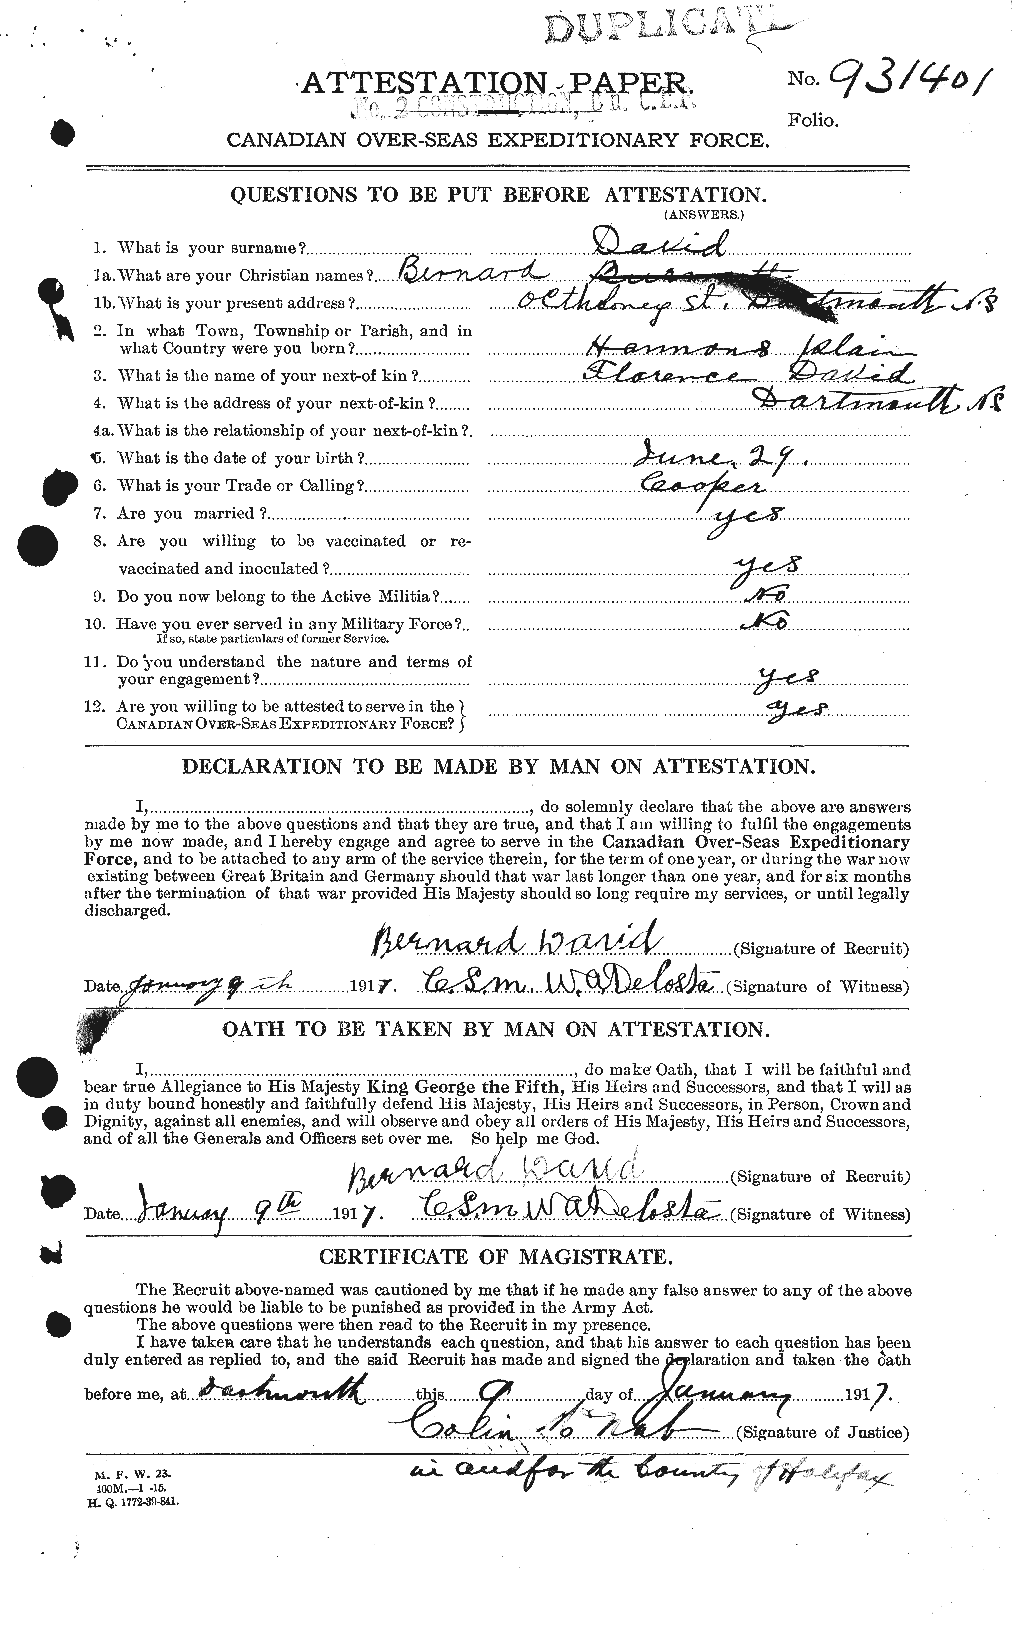 Dossiers du Personnel de la Première Guerre mondiale - CEC 280592a